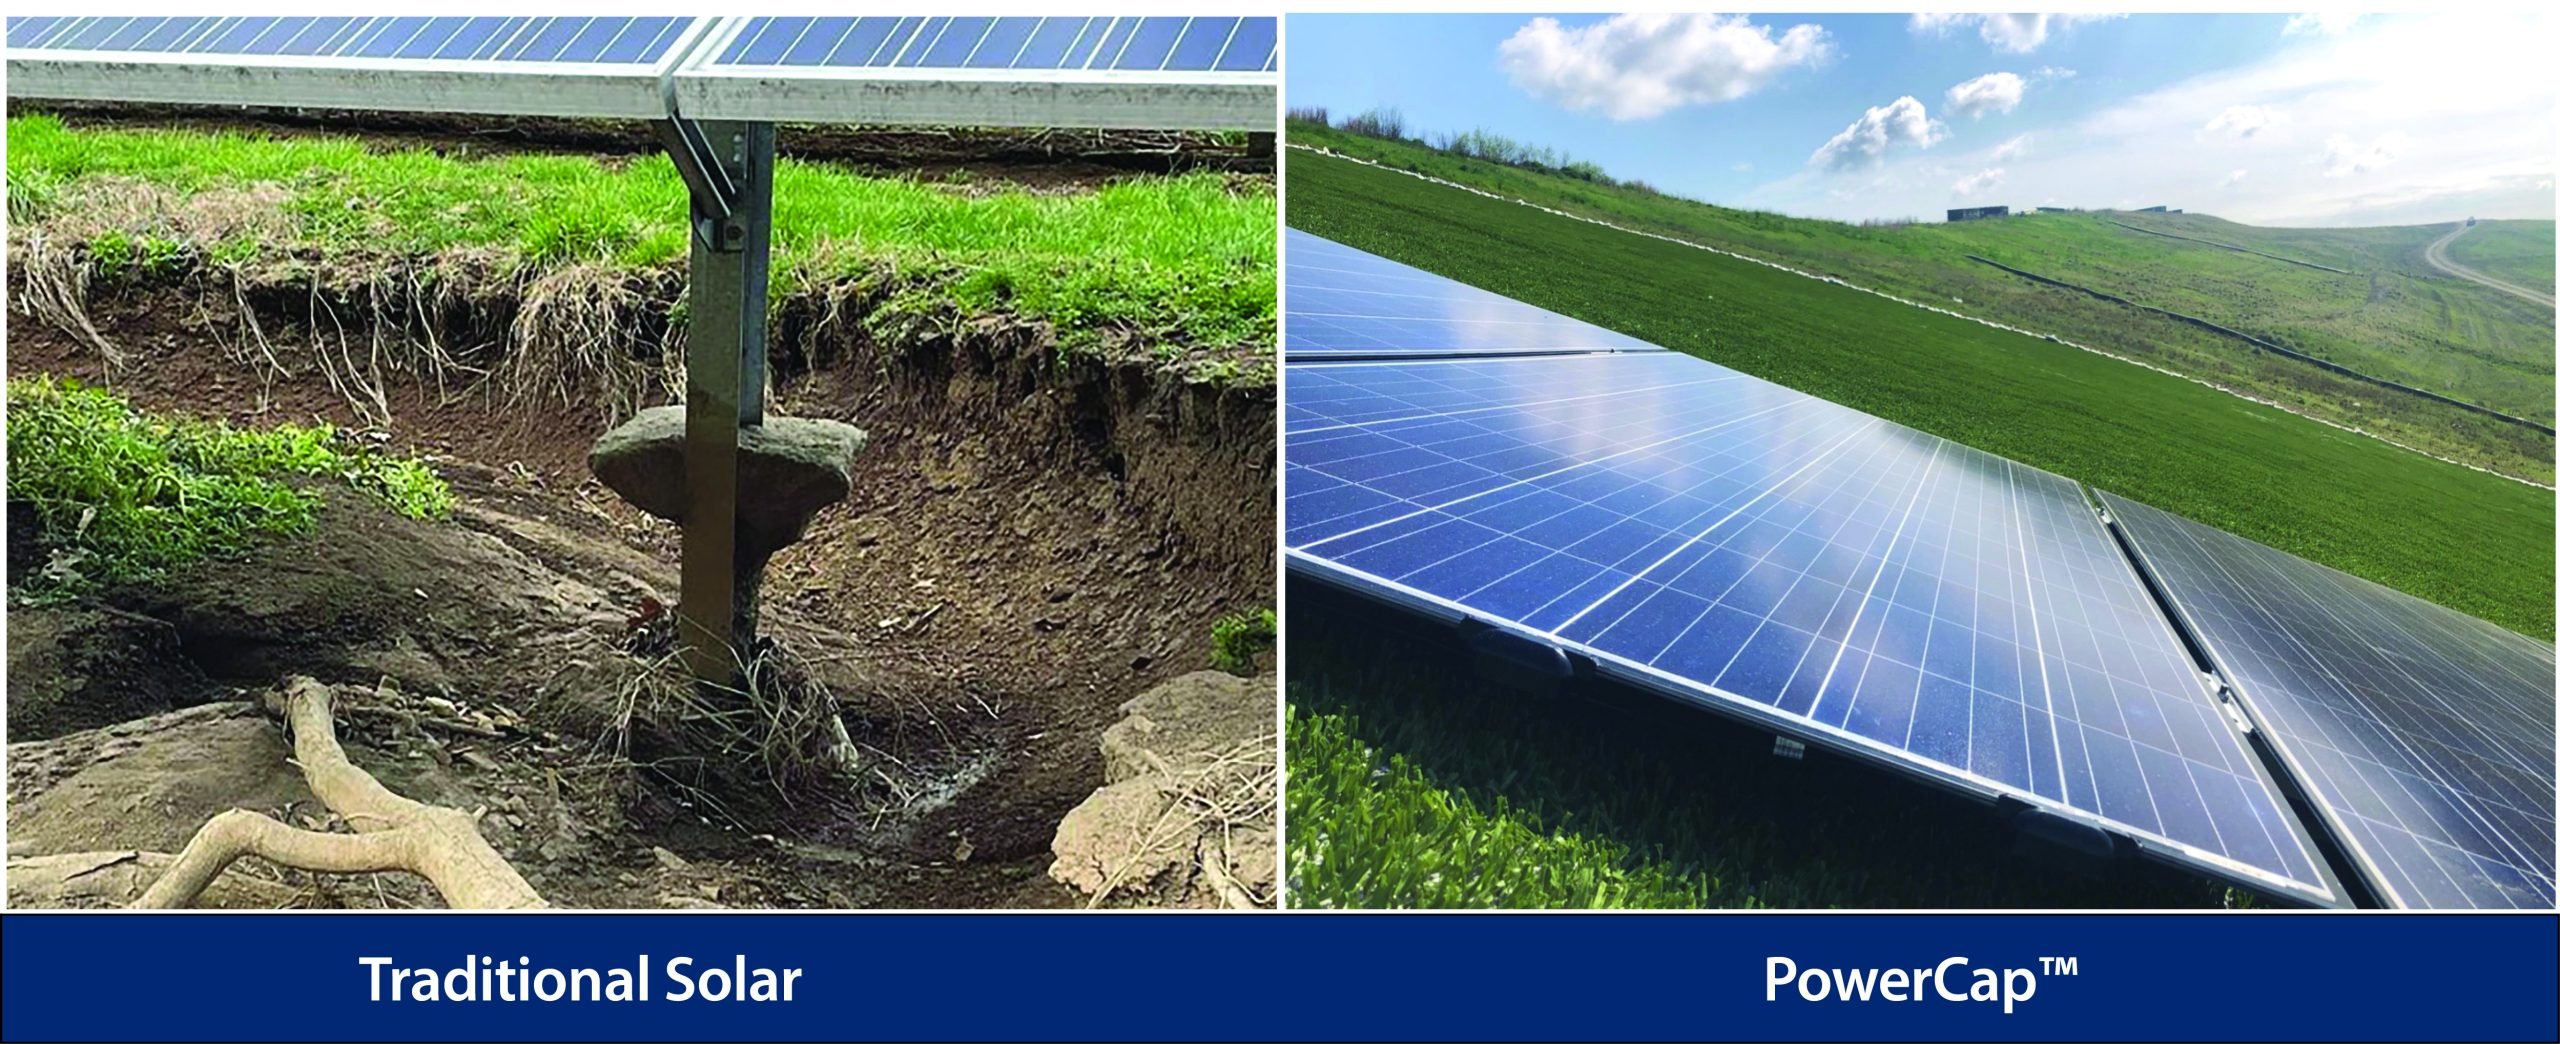 Bekämpfung der Umweltauswirkungen von Erosion und Wasserverschmutzung mit Solarenergie